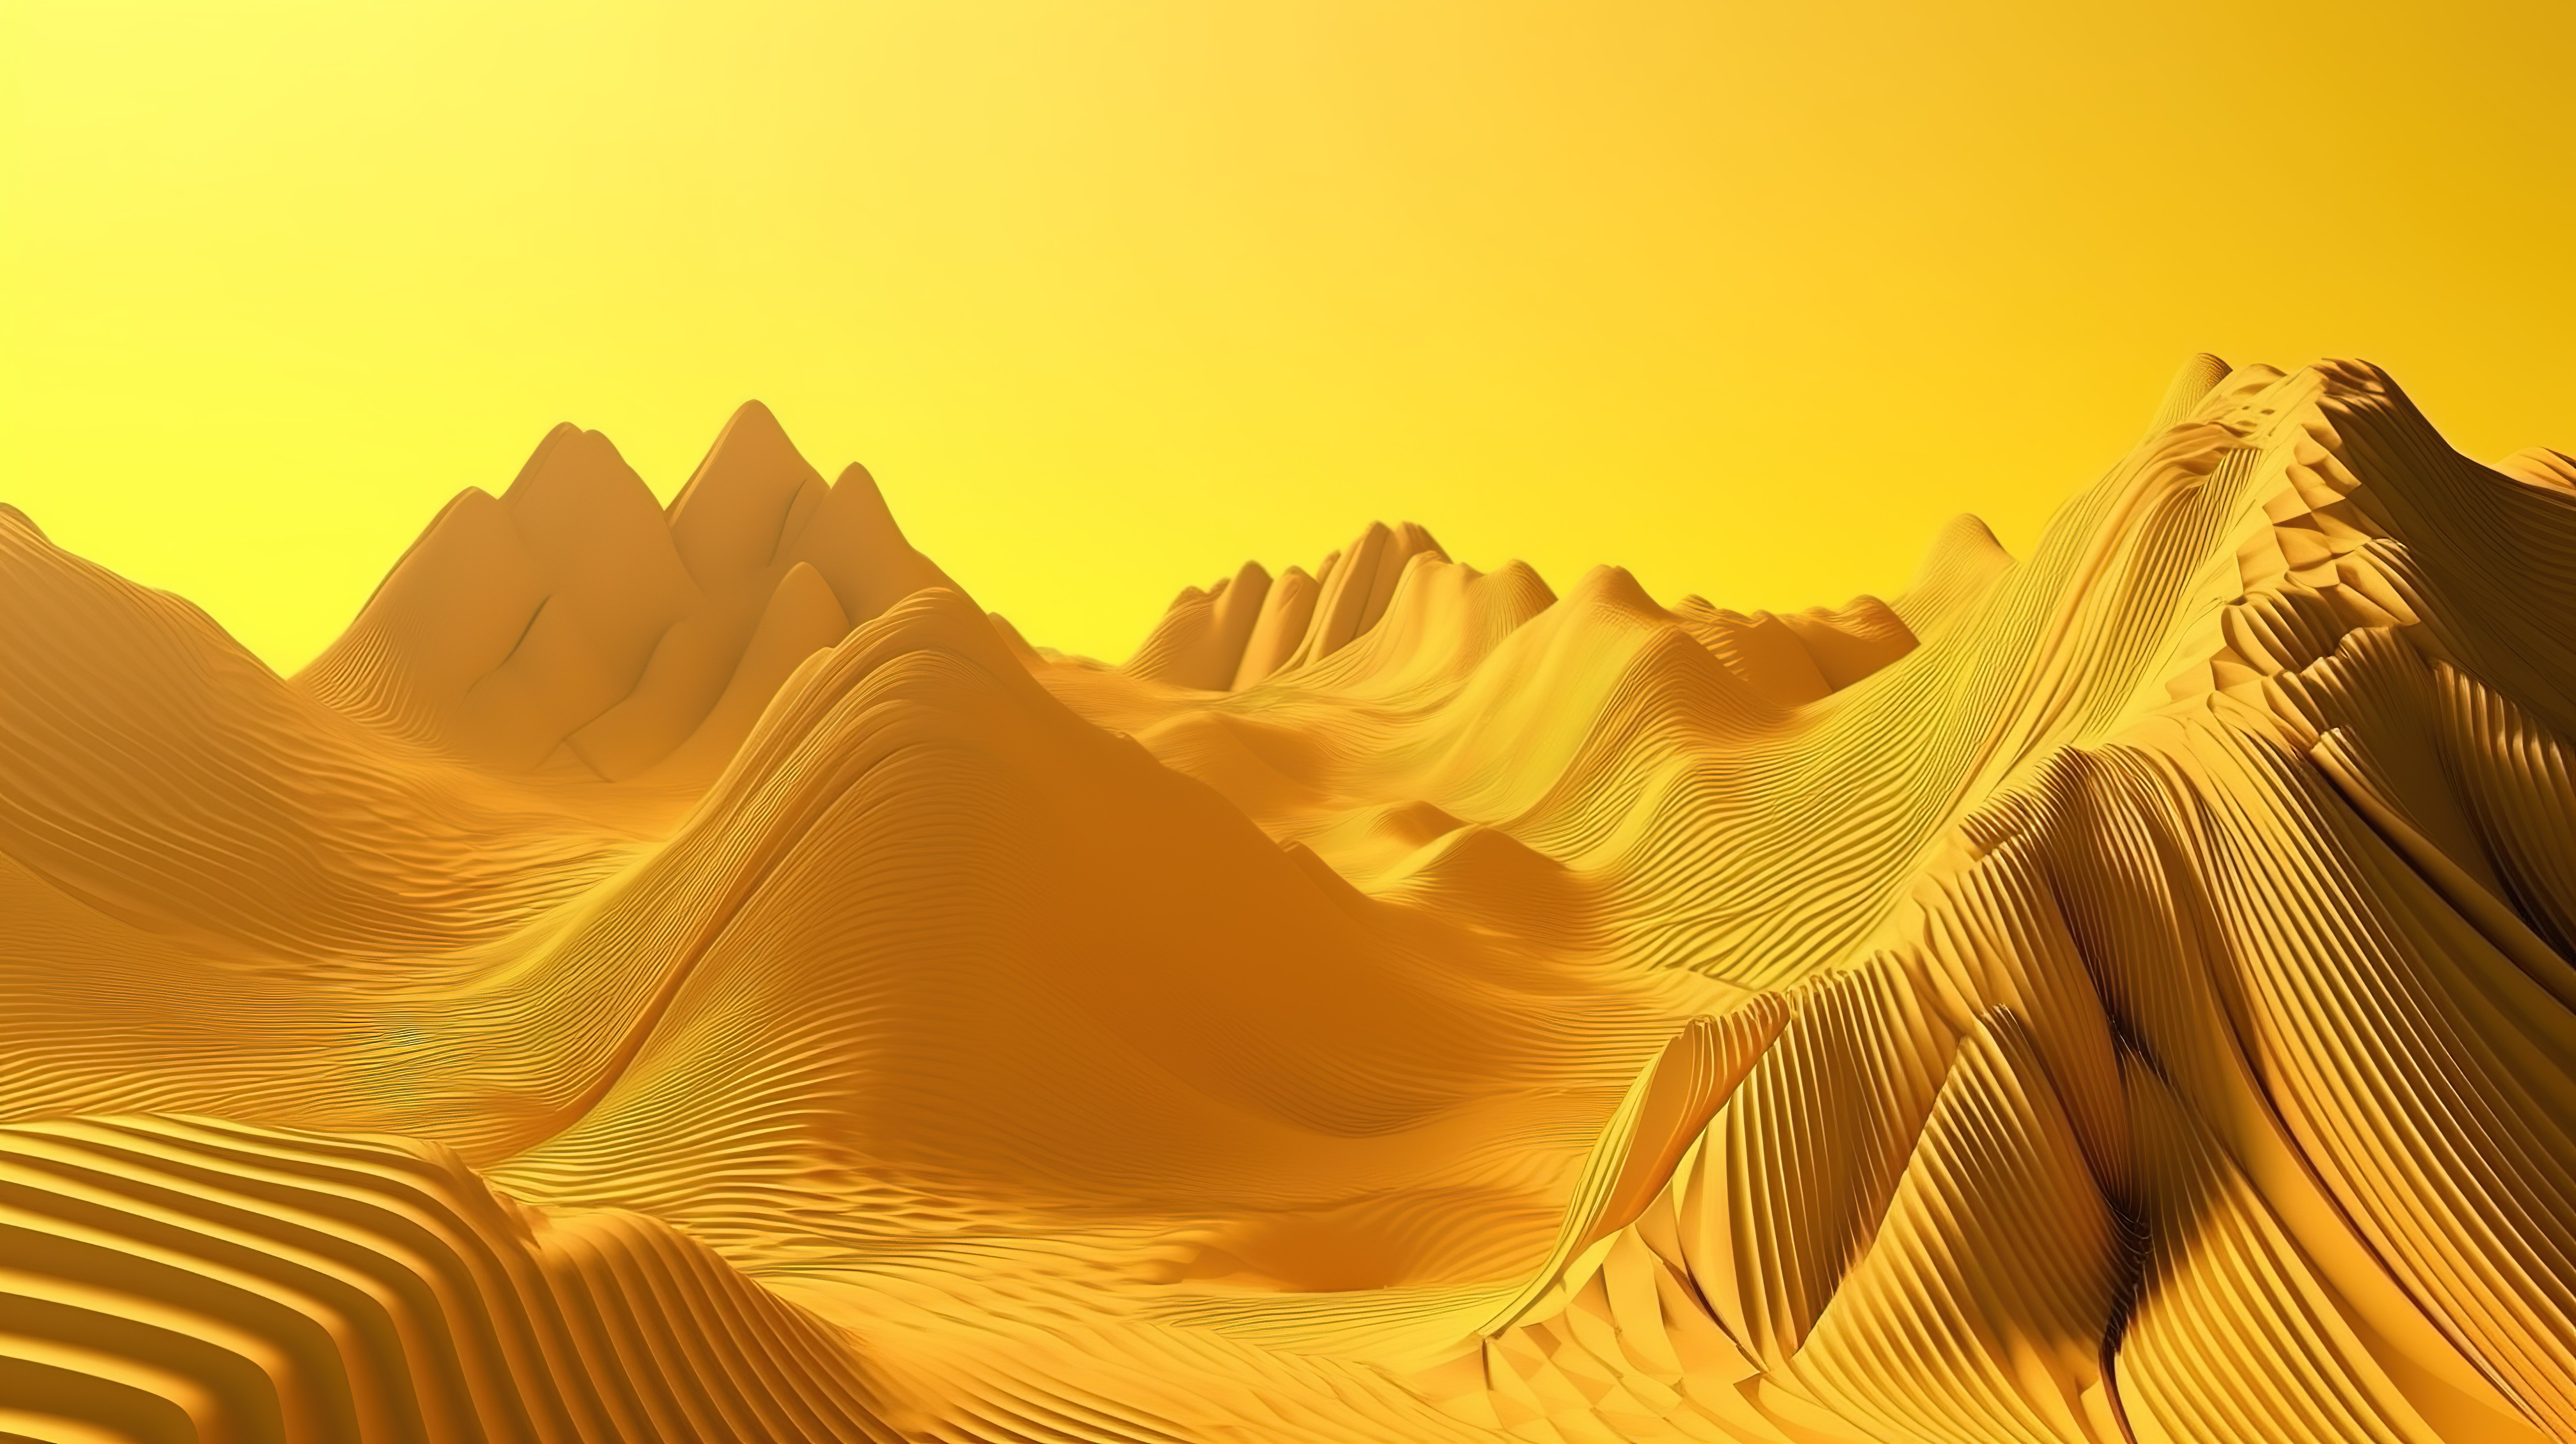 山景审美黄色背景中金色线条的令人惊叹的 3D 插图图片